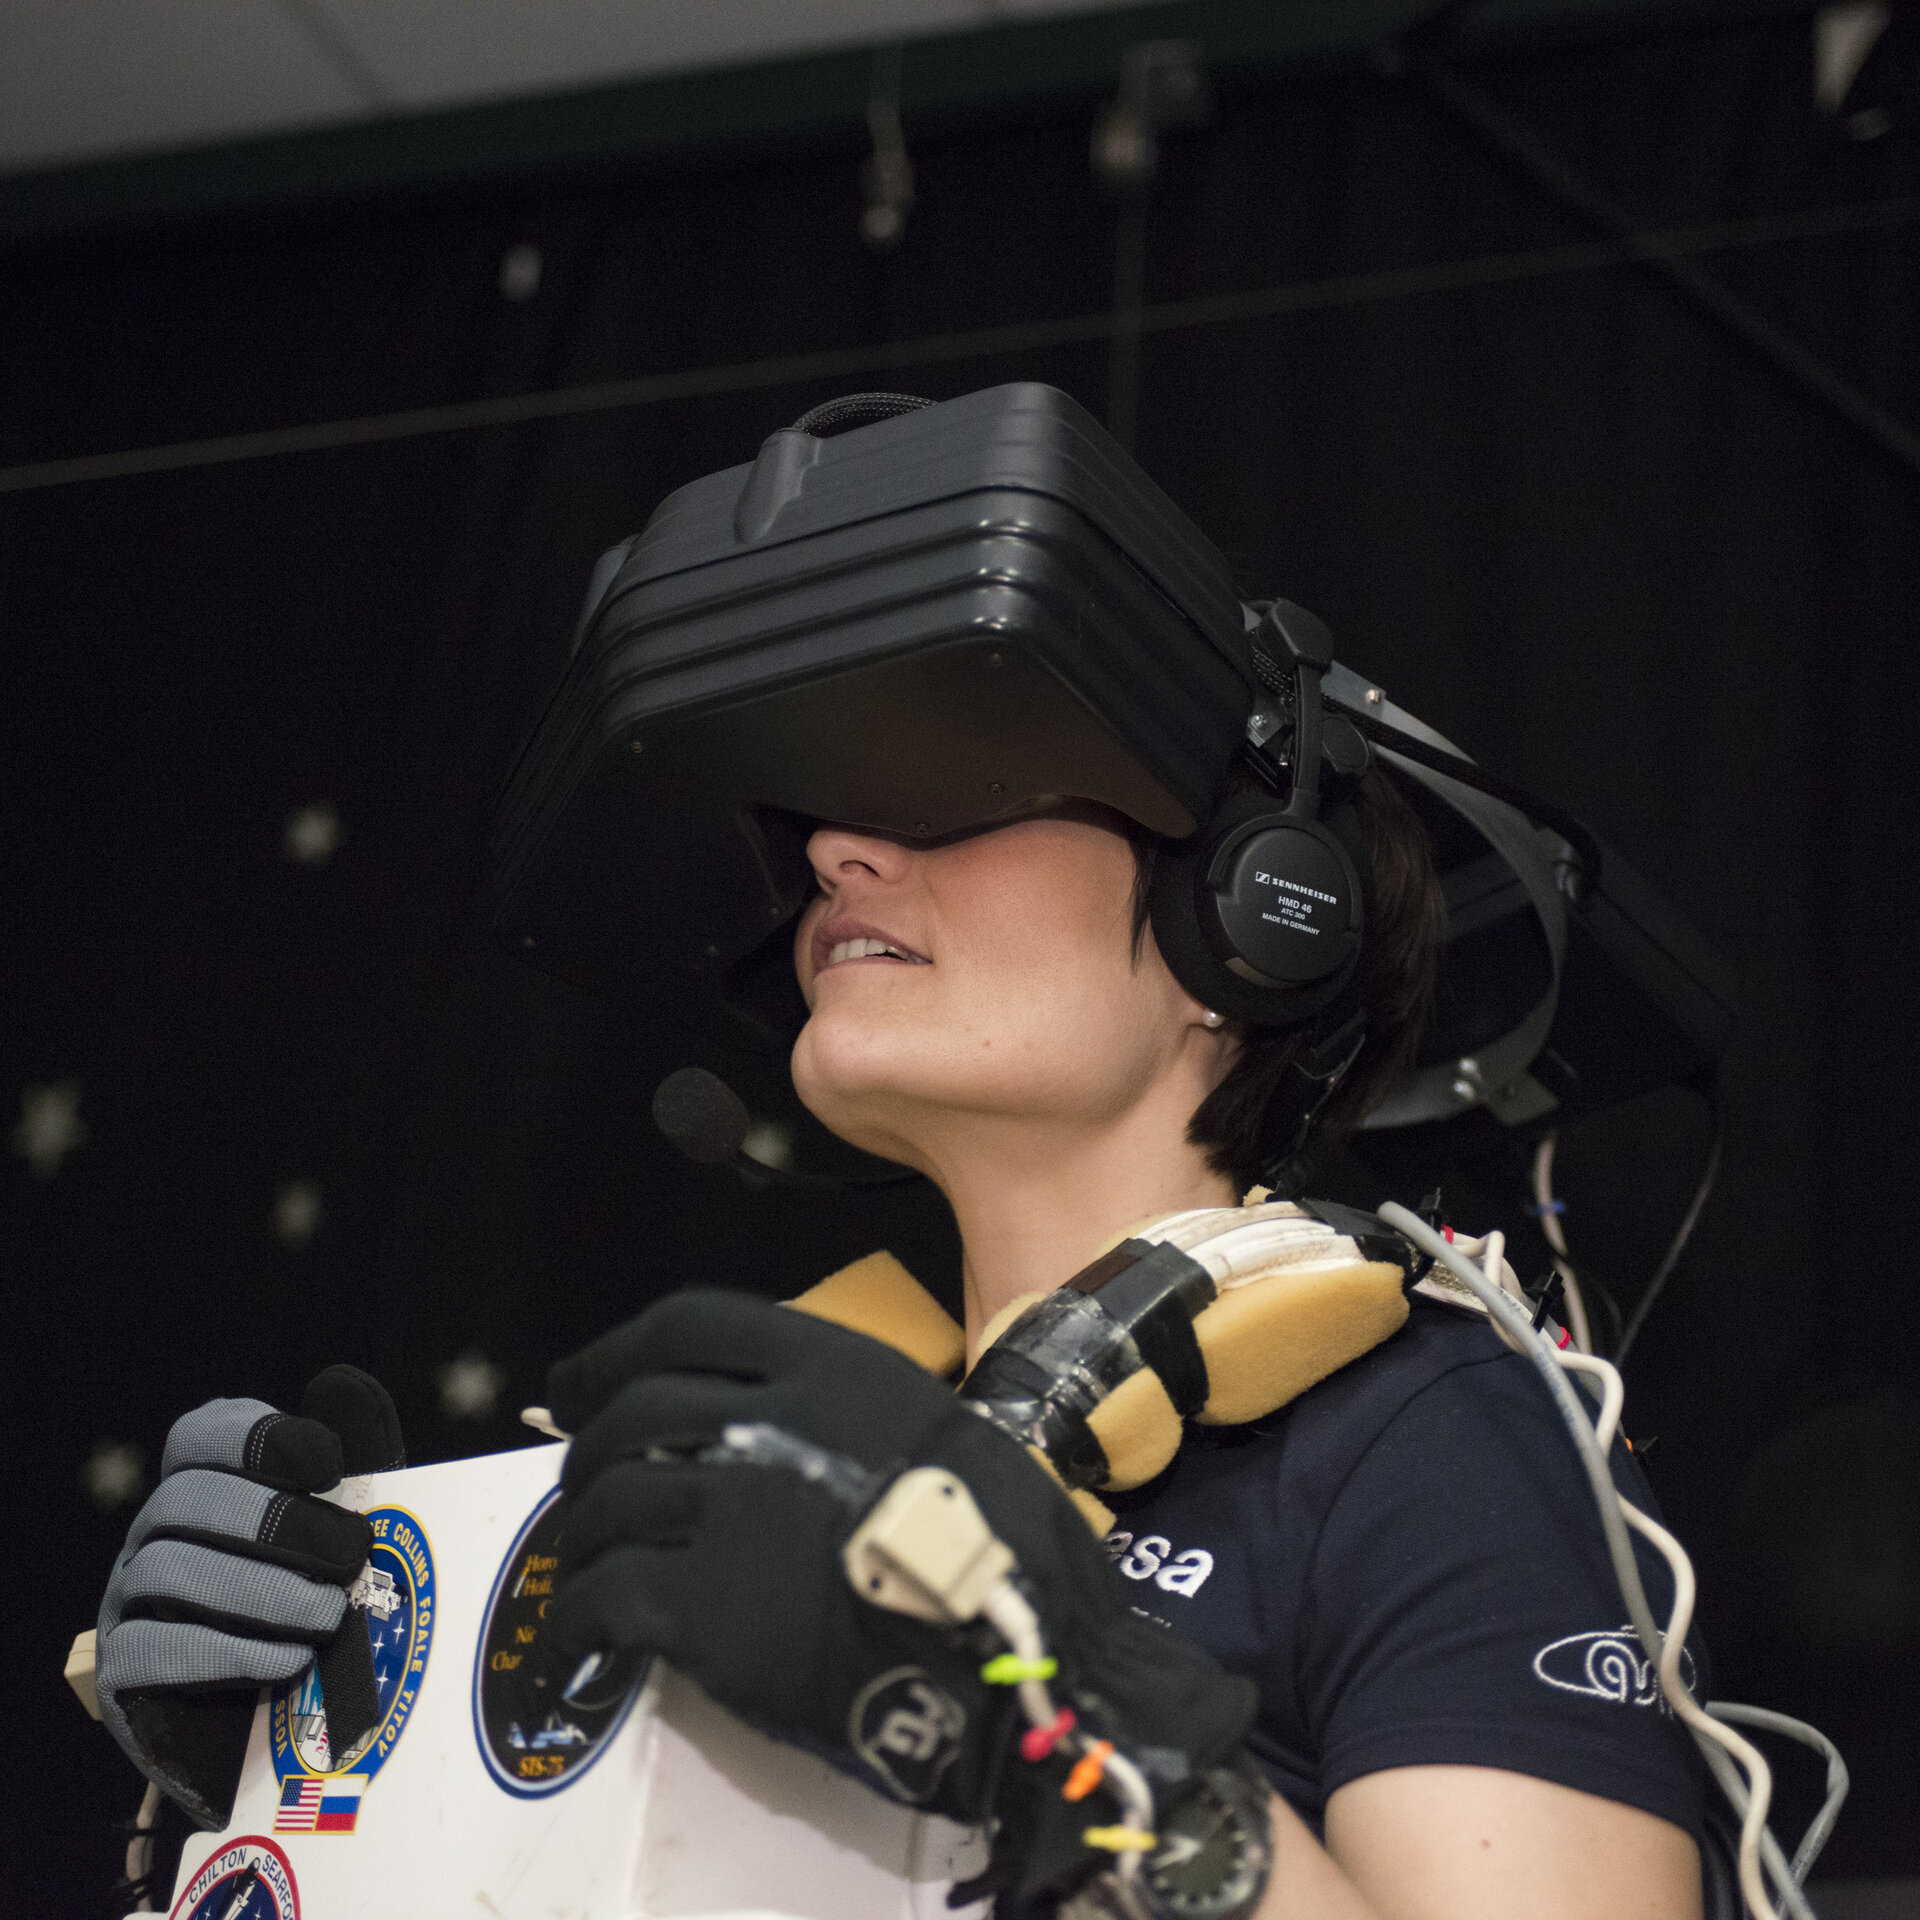 Samantha using the virtual reality hardware at JSC 